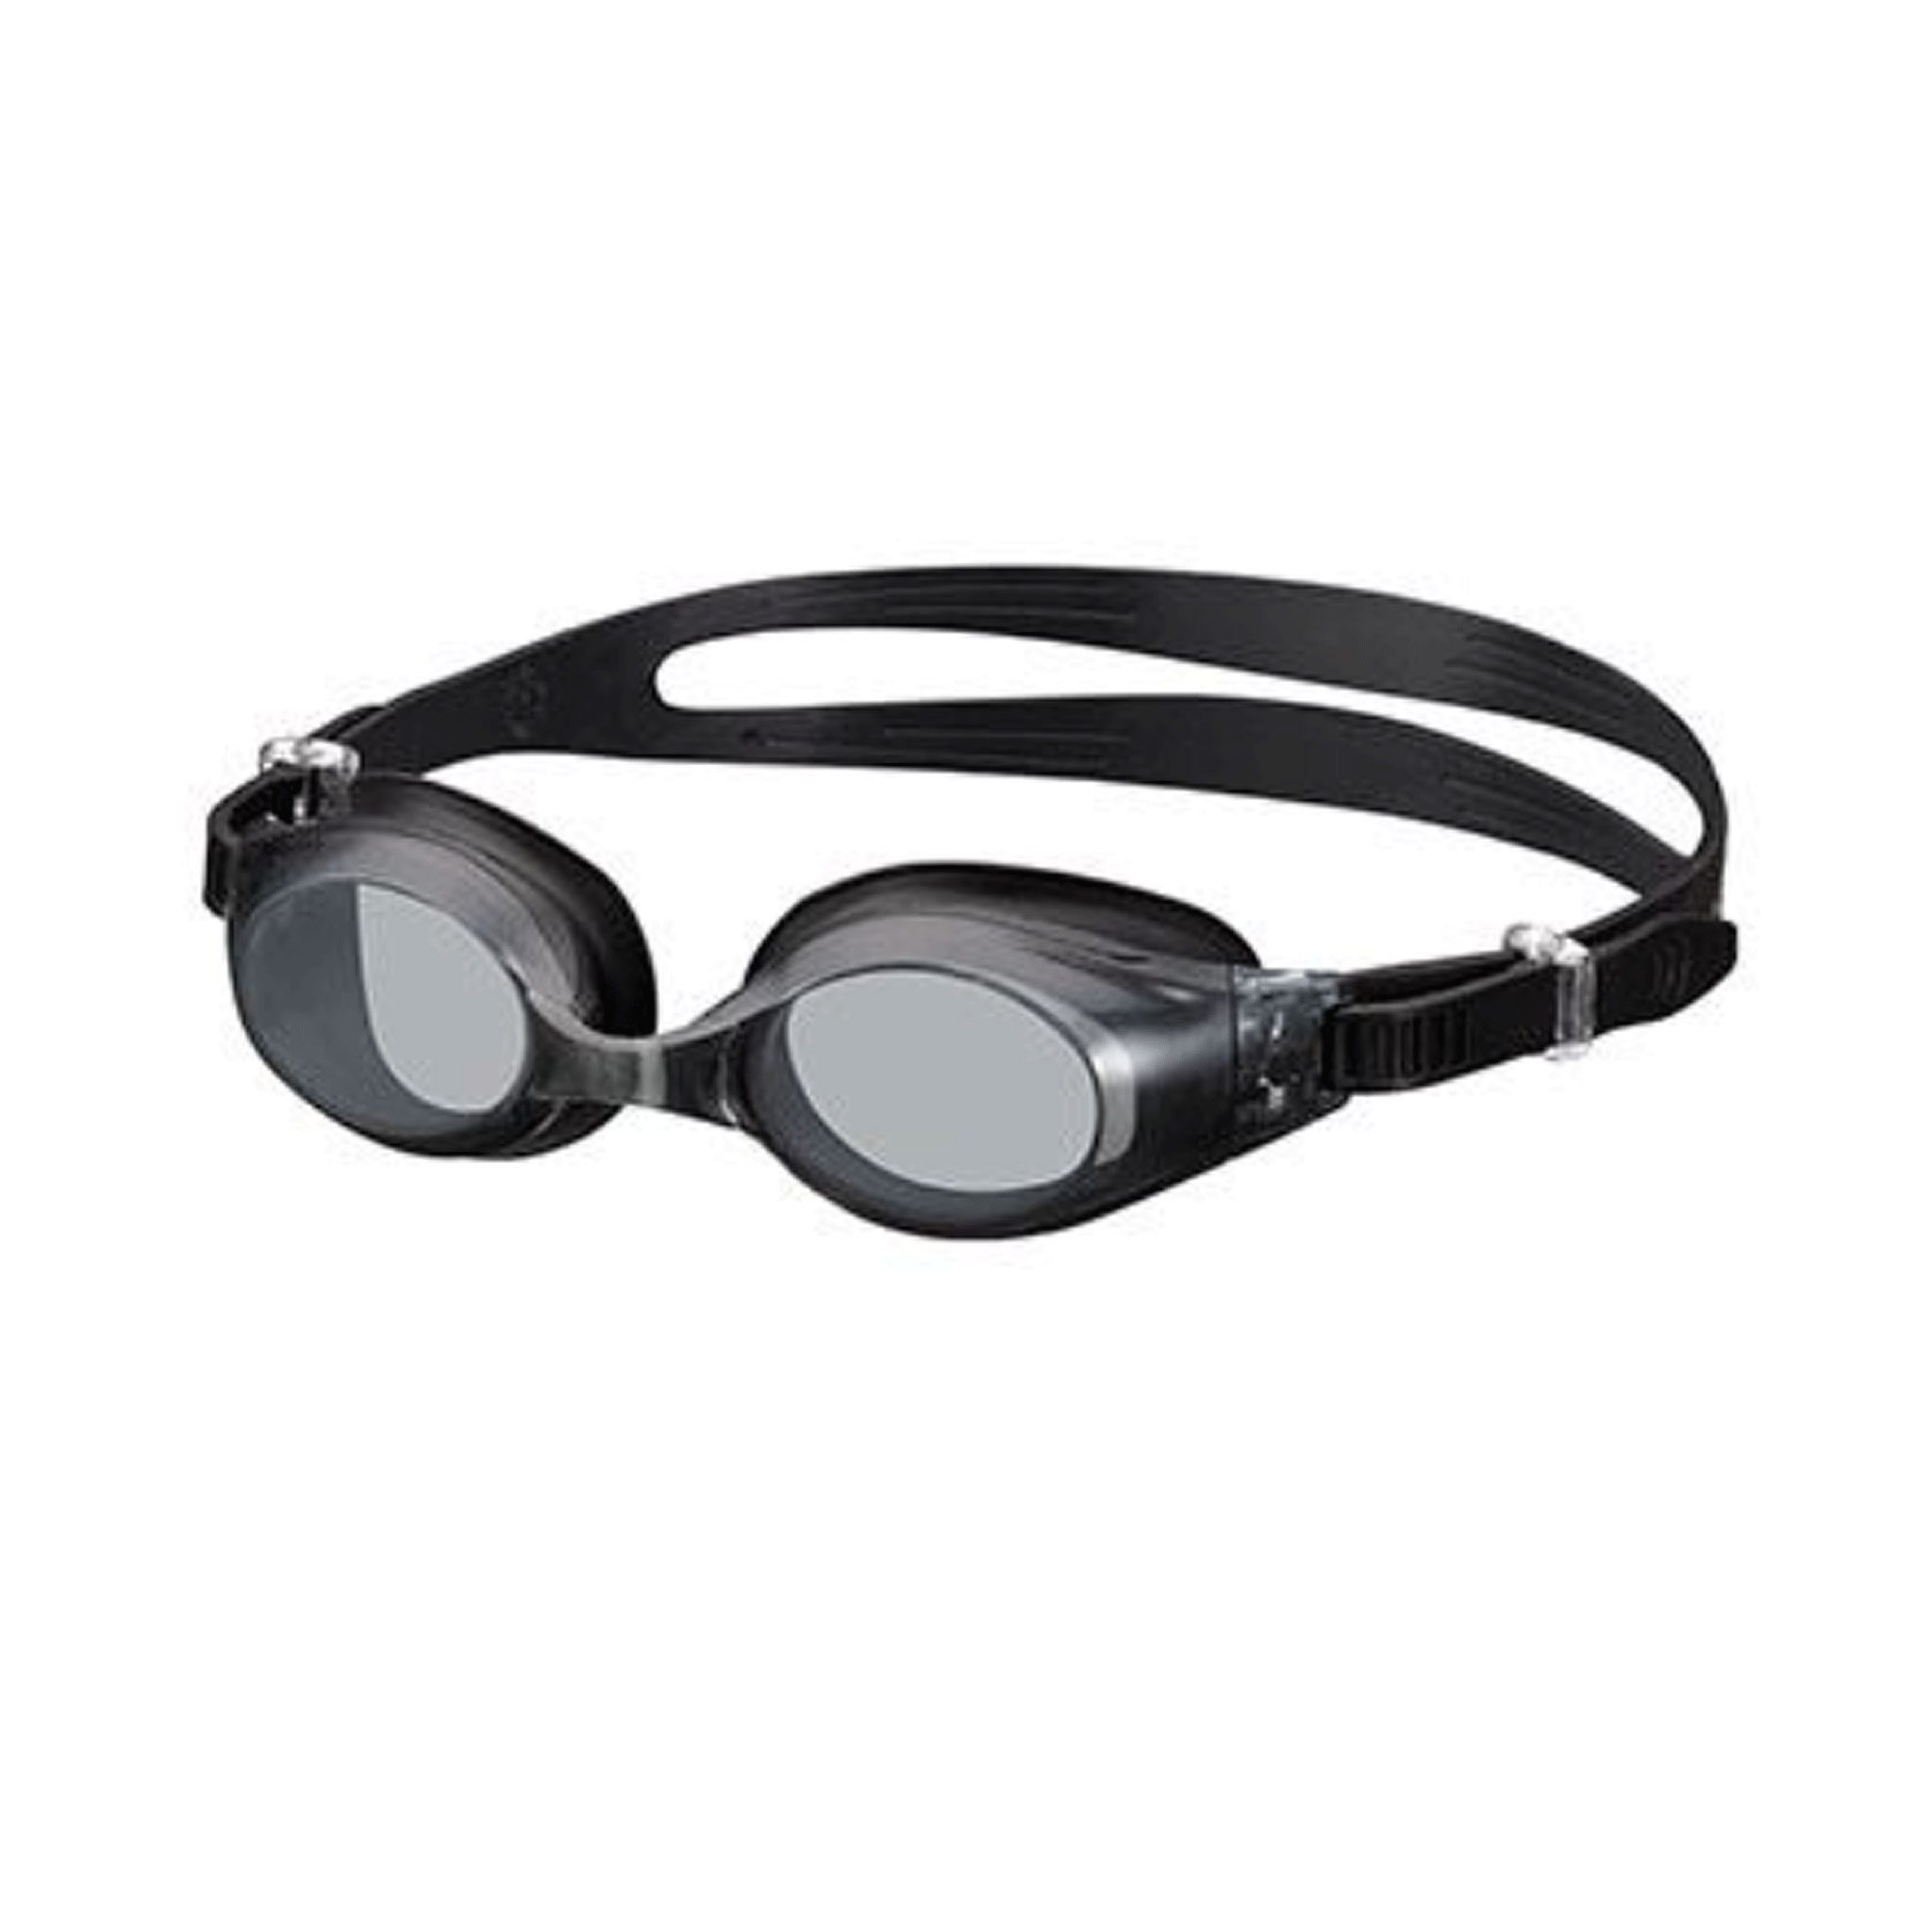 View Swipe Anti Fog Adult Prescription Swimming Goggles 